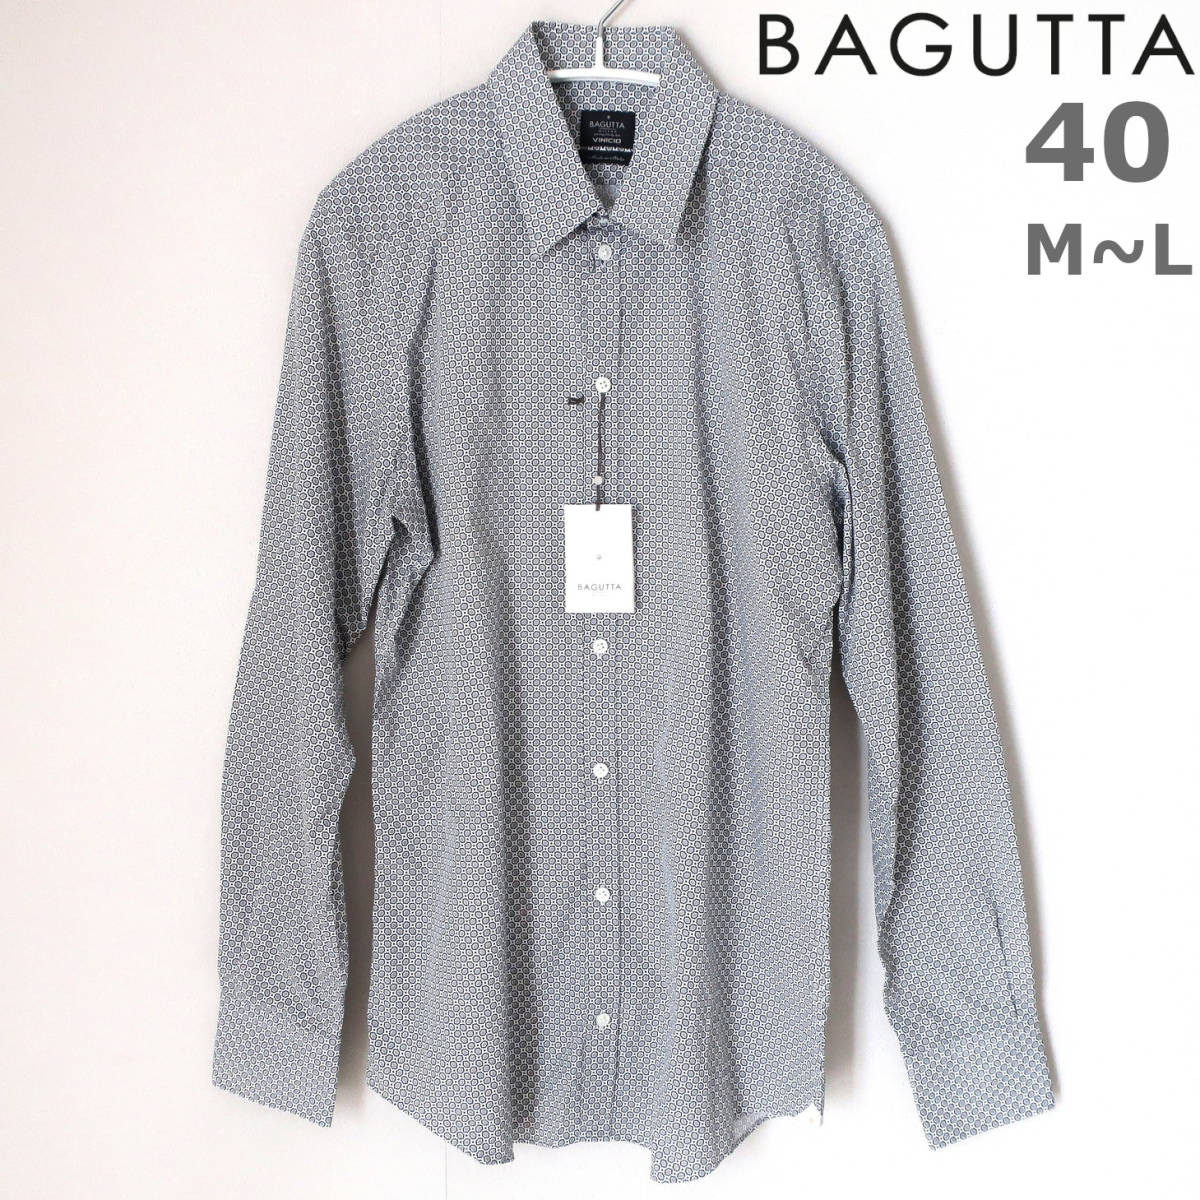 新品 BAGUTTA バグッタ イタリア製 最高級 メンズ ドレスシャツ 総柄 モノトーン 長袖 ボタン シャツ 黒 白 グレー 40 Mサイズ Lサイズ